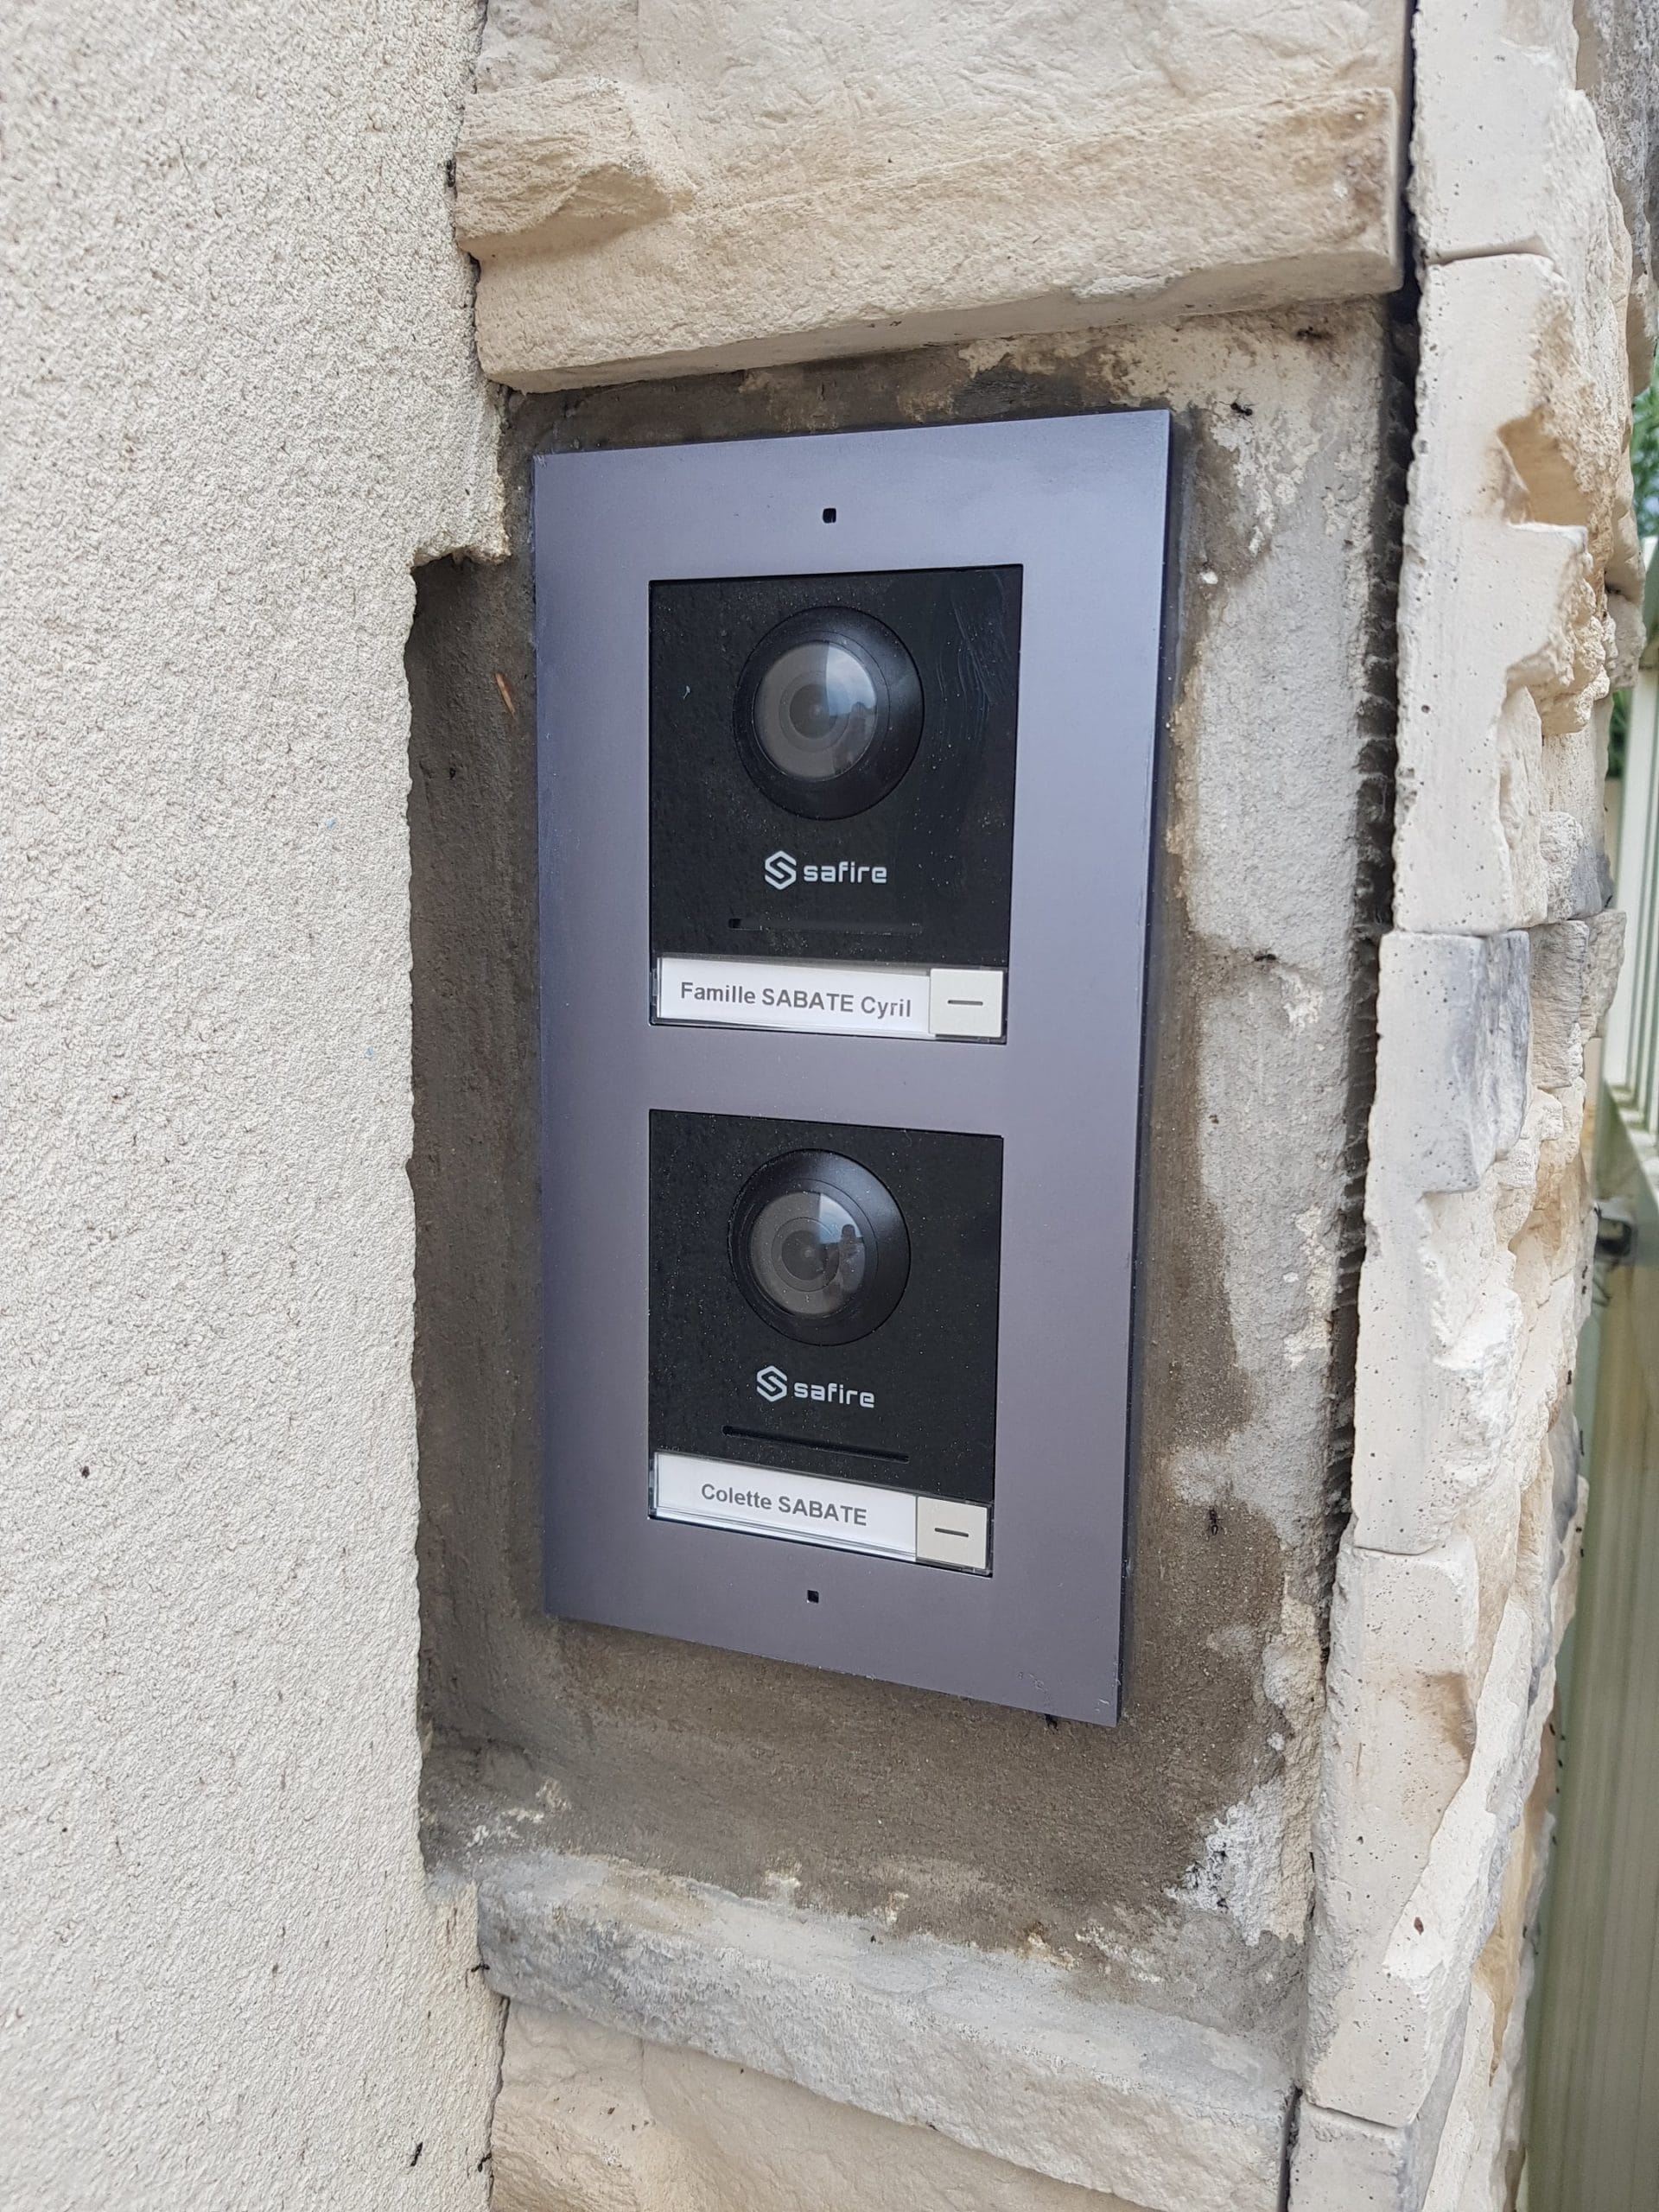 Installation de systèmes de contrôle d’accès pour particuliers avec 2 visiophones indépendants (interphone vidéo) à Lançon de Provence